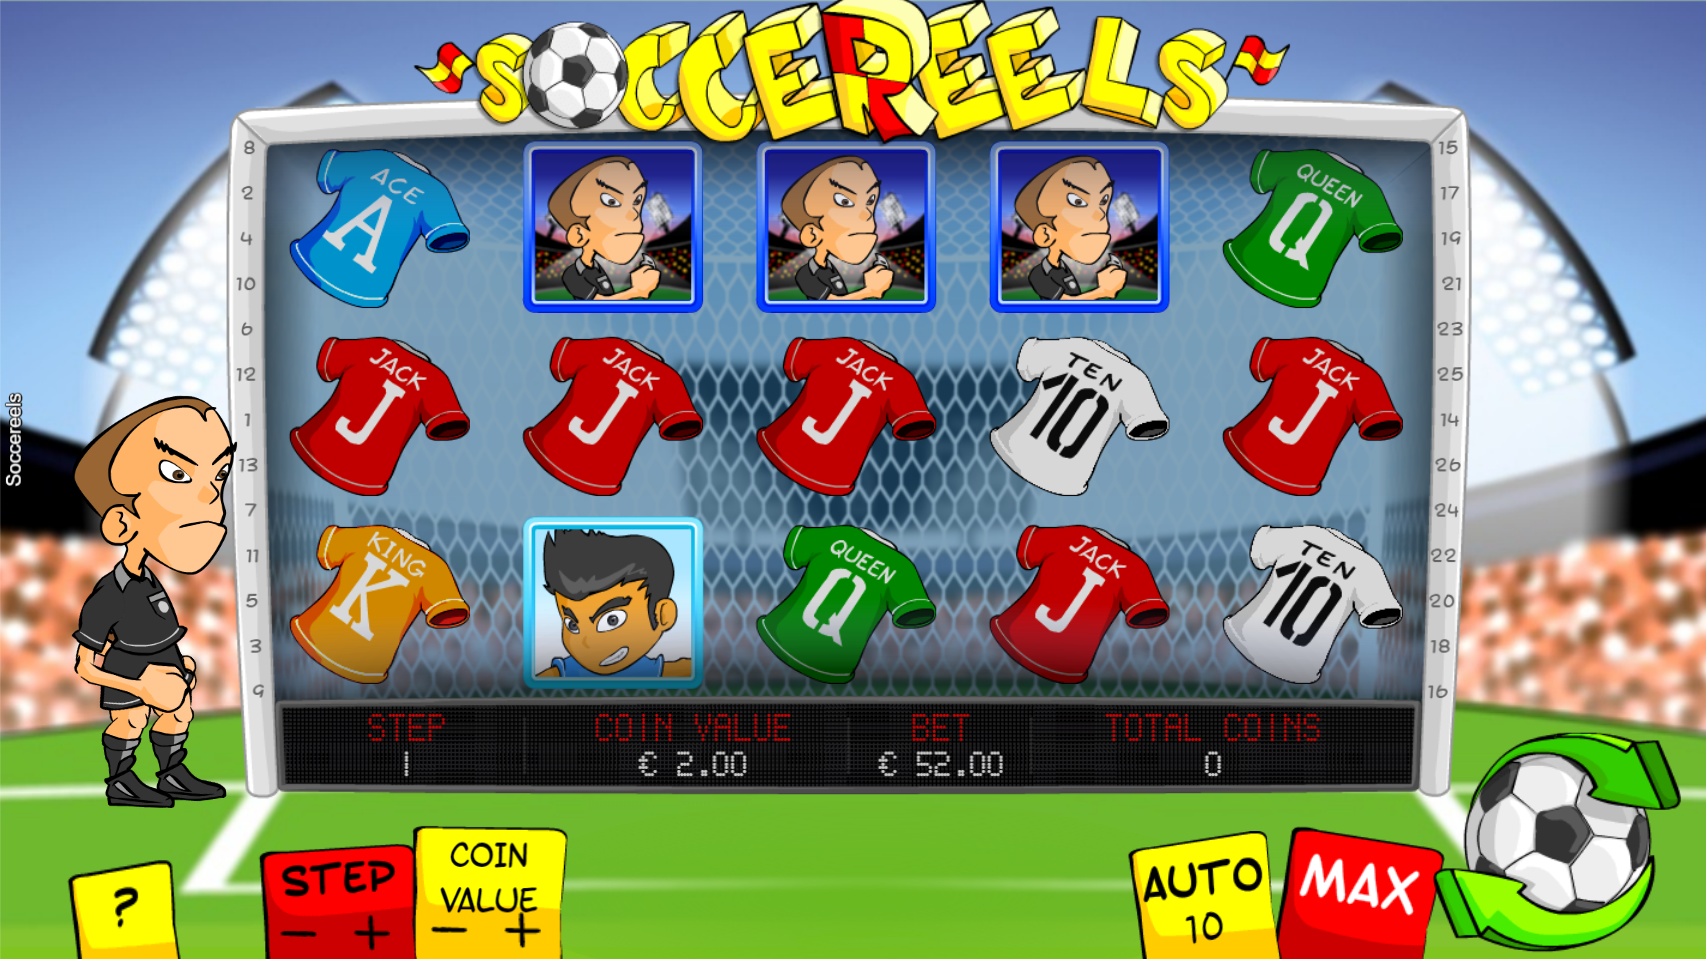 Soccereels Slot Review